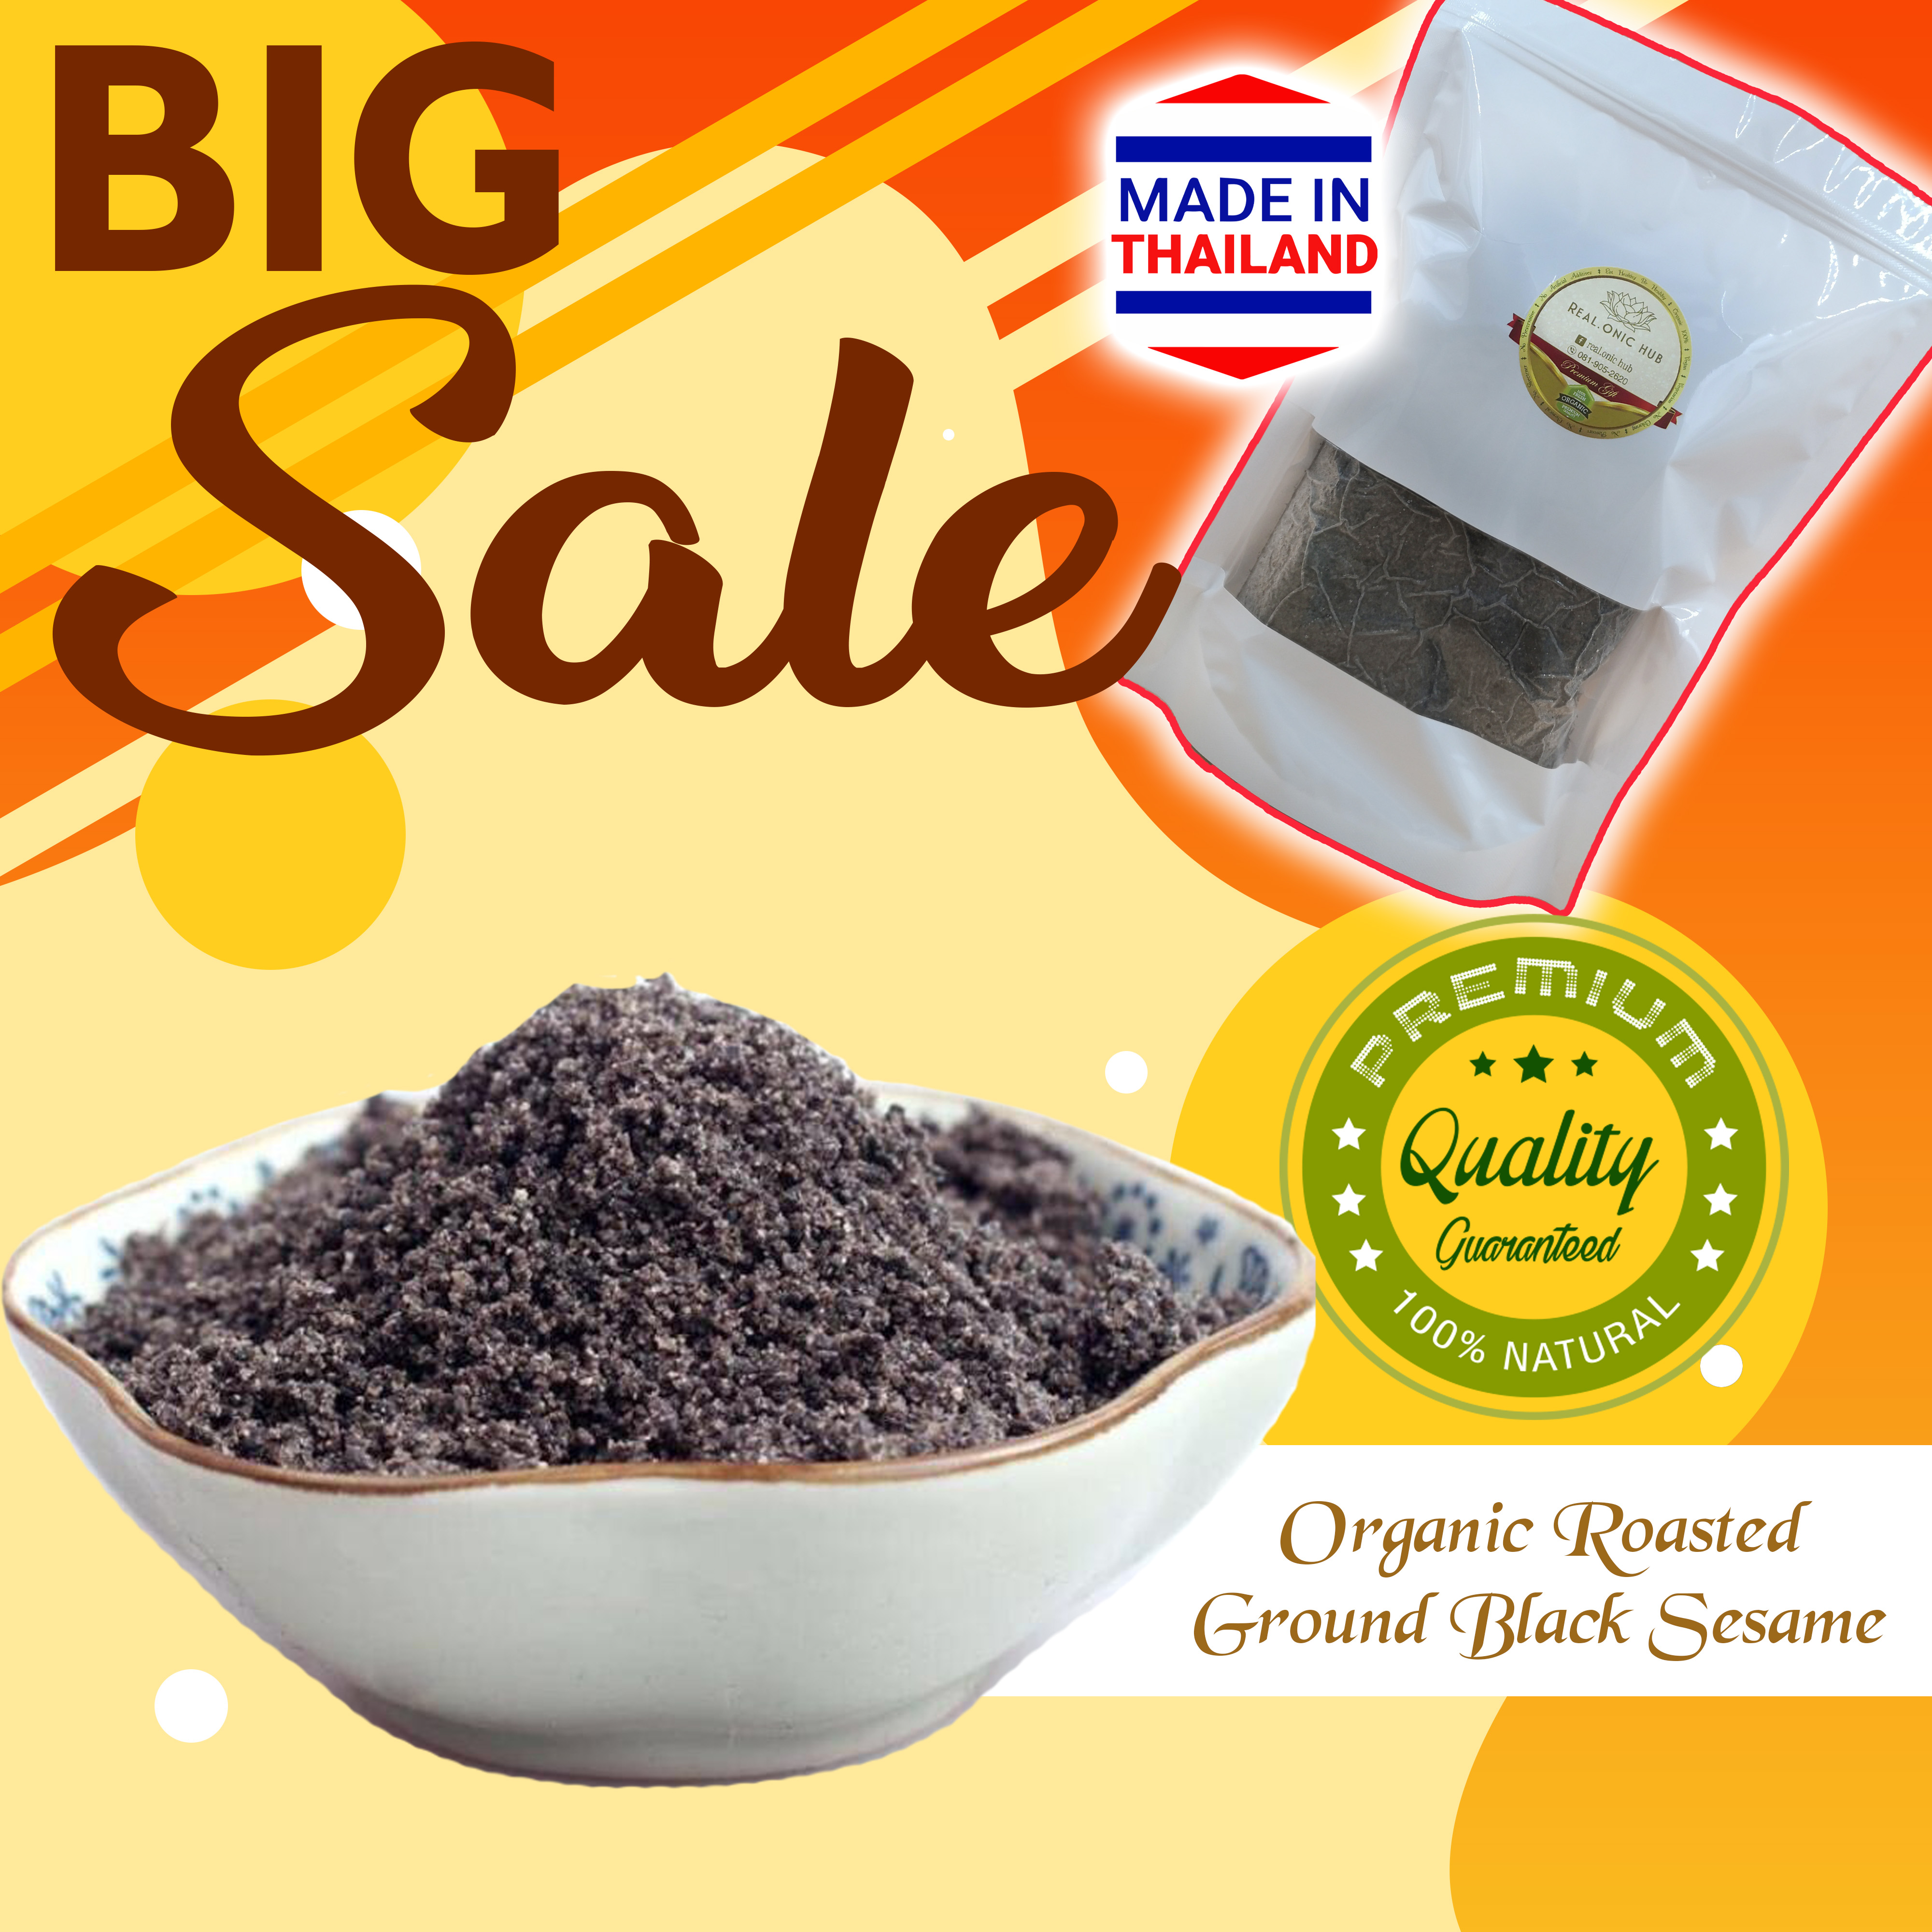 ขายส่ง😍 ถุงซิป/Zip Bag 1 Kg. 💝 งาดำ ปลอดสาร คั่วบด (Organic Roasted Ground Black Sesame) 💝 ธัญพืช พร้อมทาน